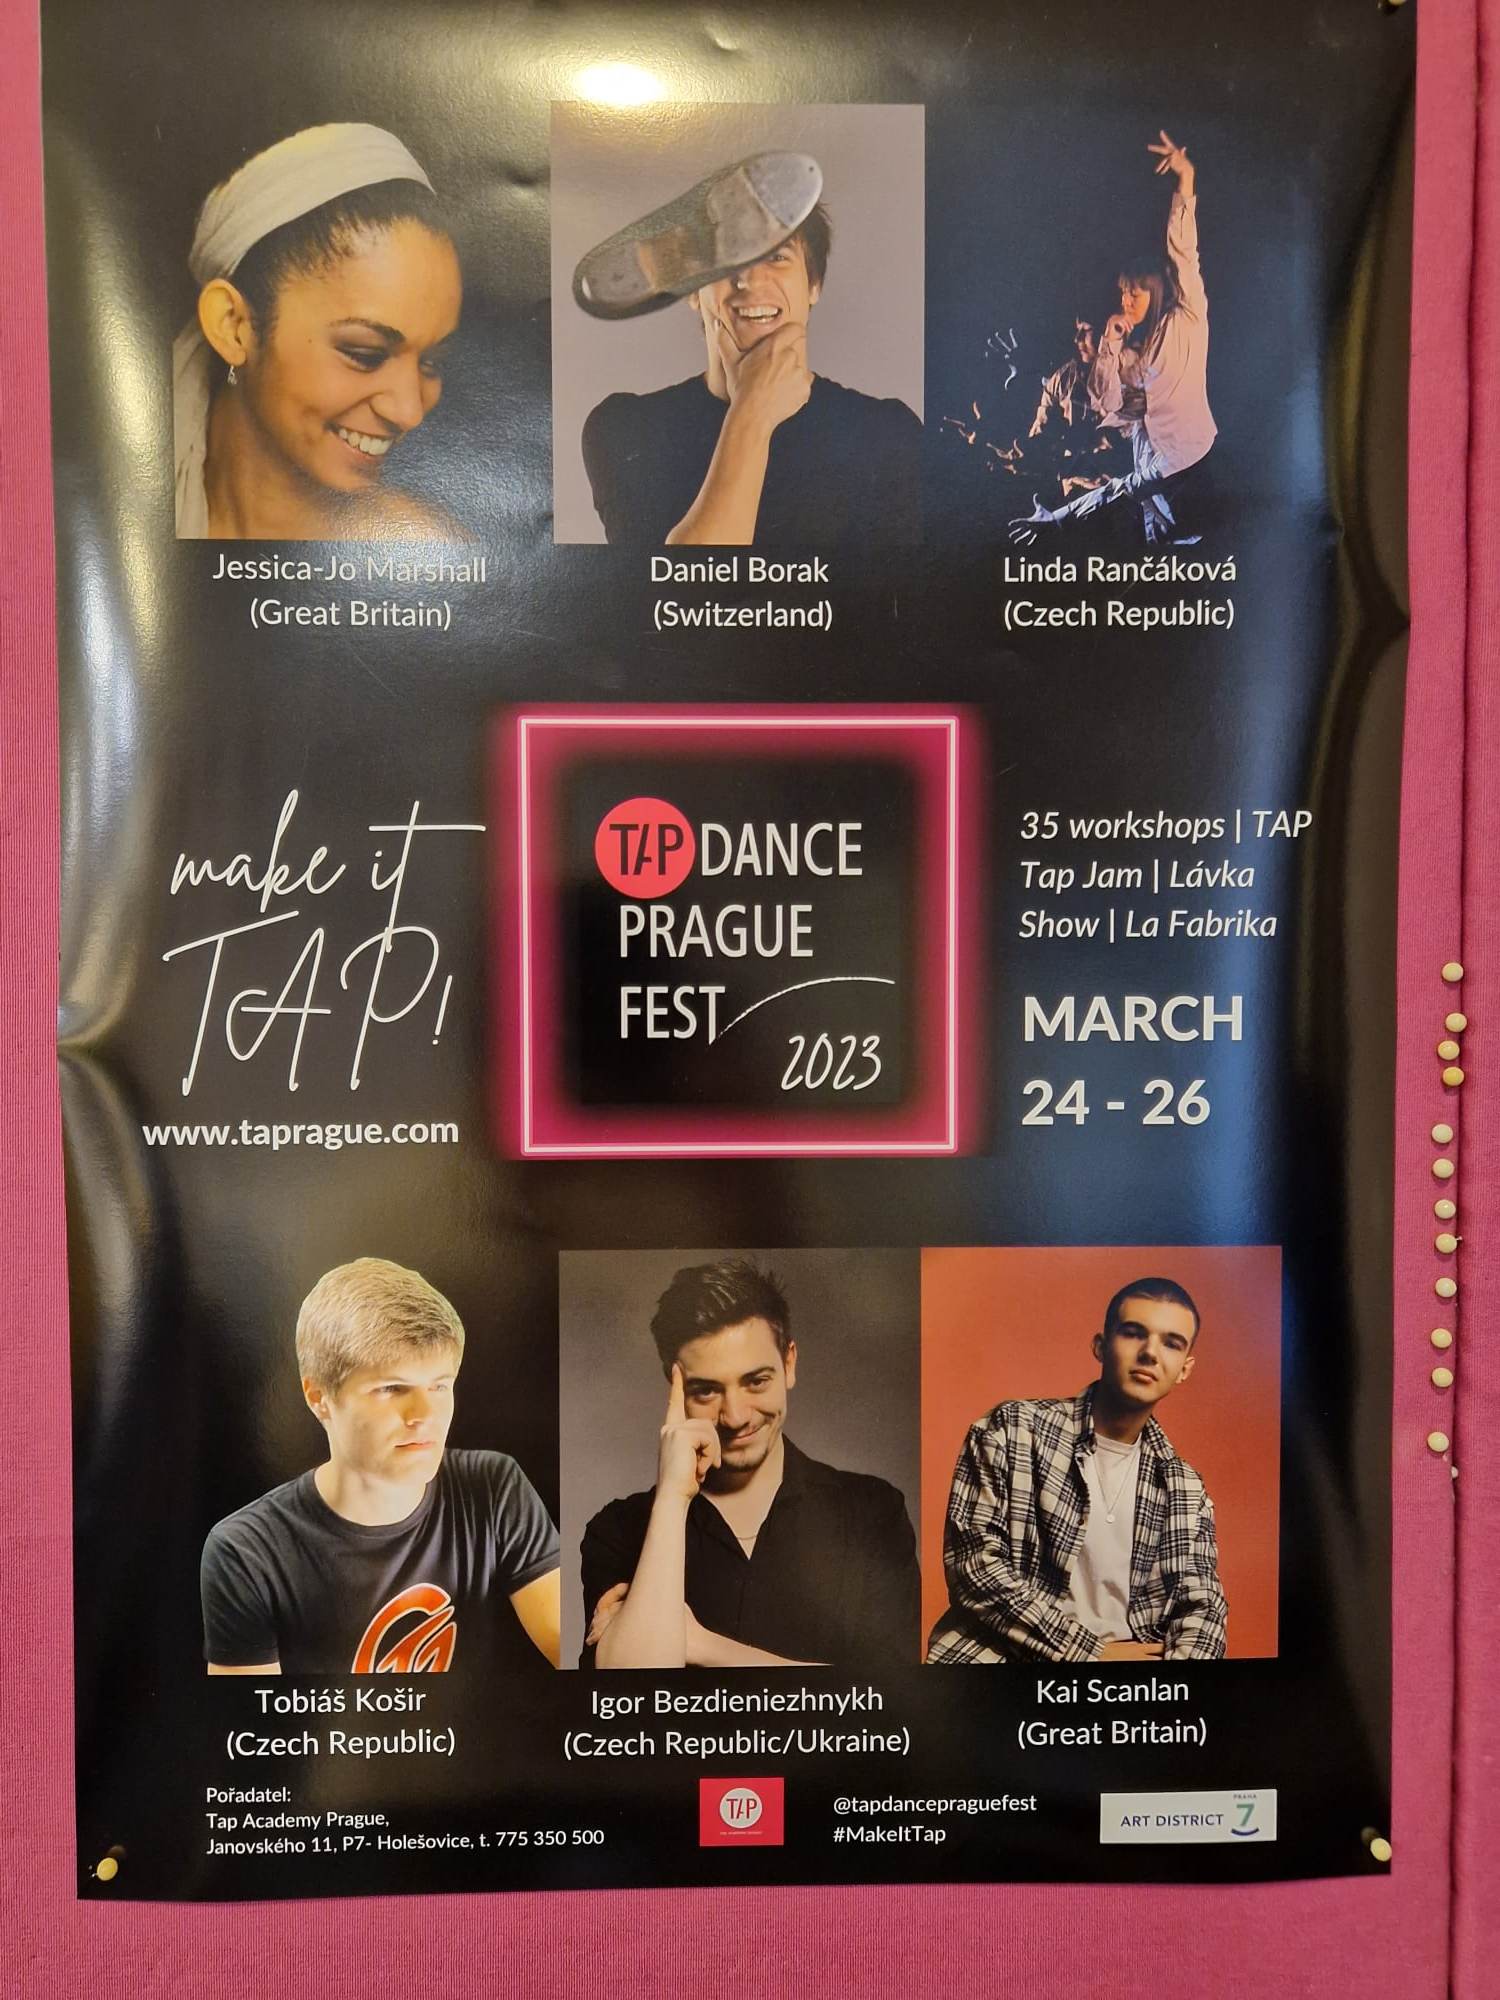 Tap-dance Prague Fest 2023 24-26.03.